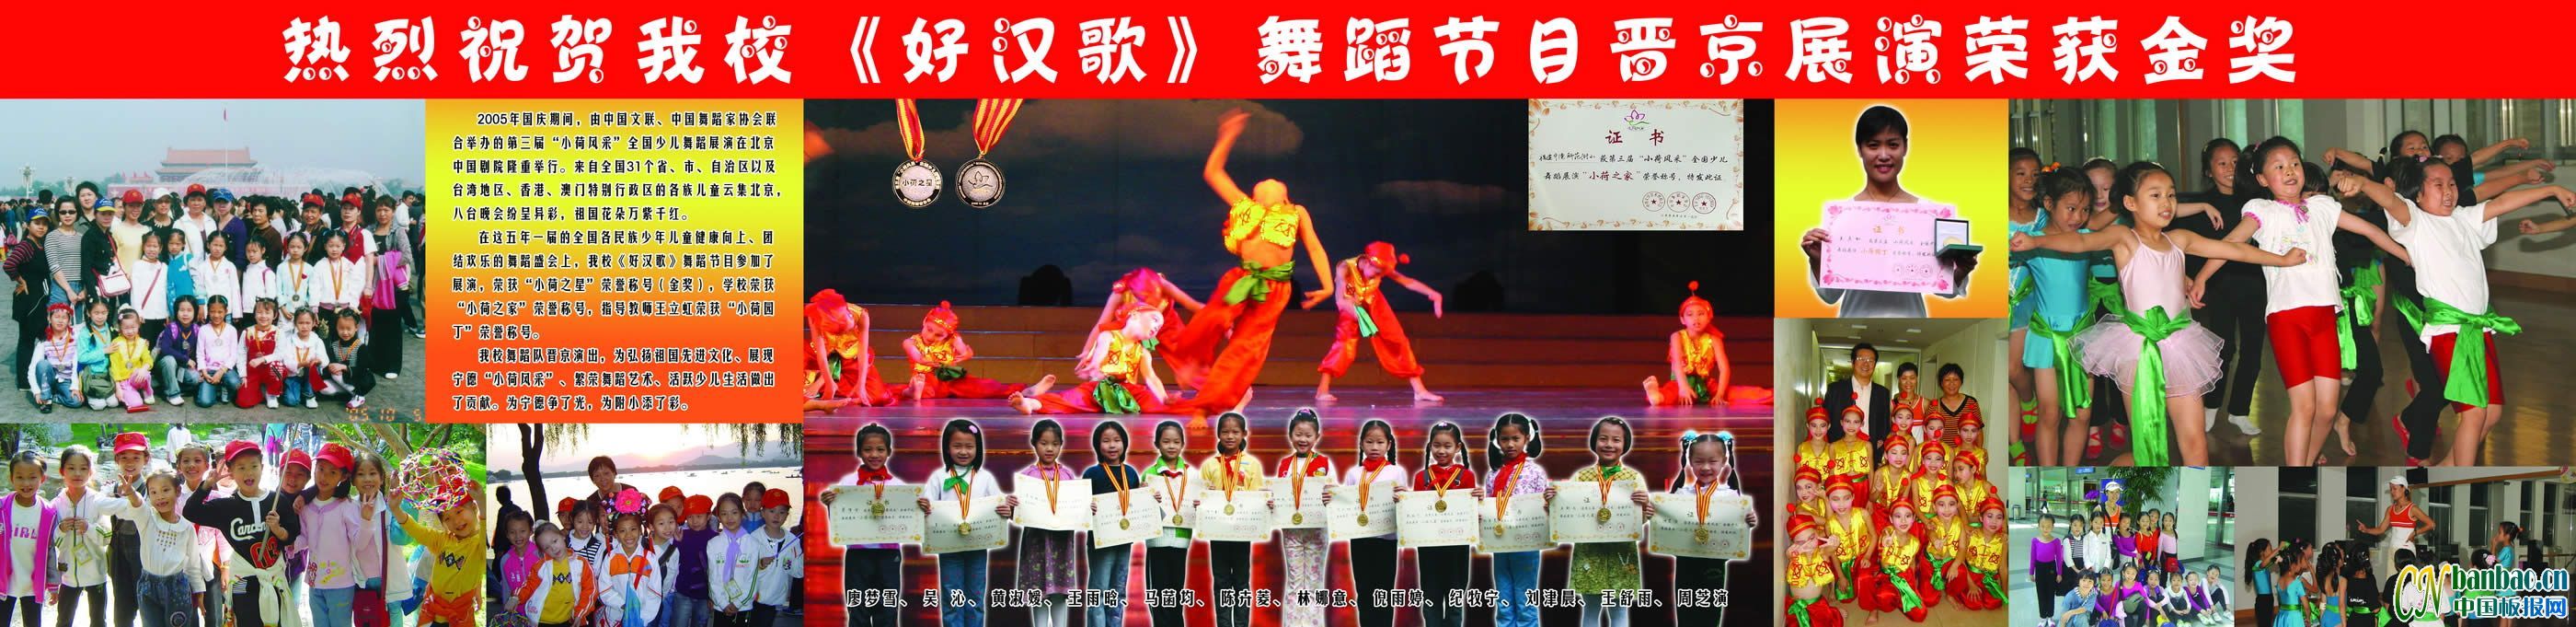 热烈祝贺学校《好汉歌》舞蹈节目晋京展演荣获金奖展板